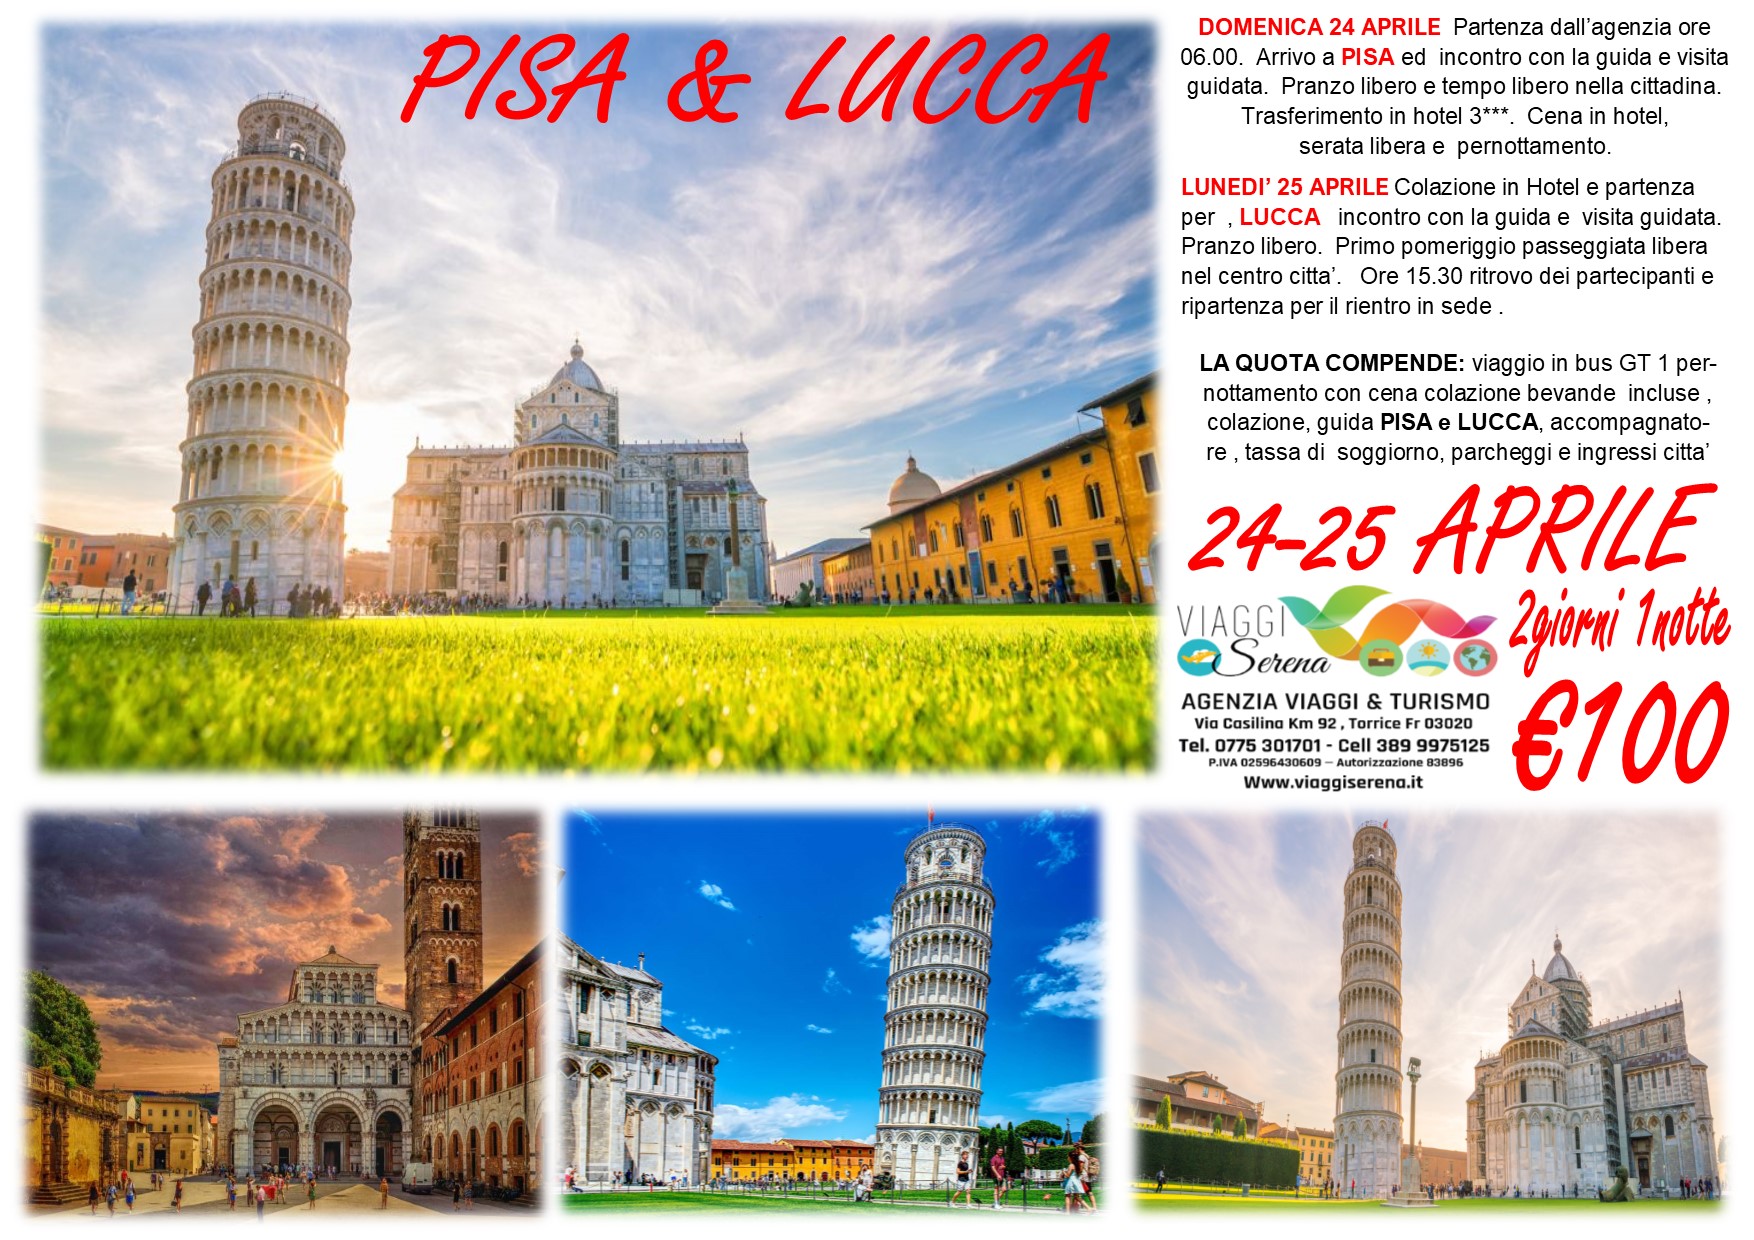 Viaggi di Gruppo: Pisa & Lucca 24-25 Aprile  €100,00